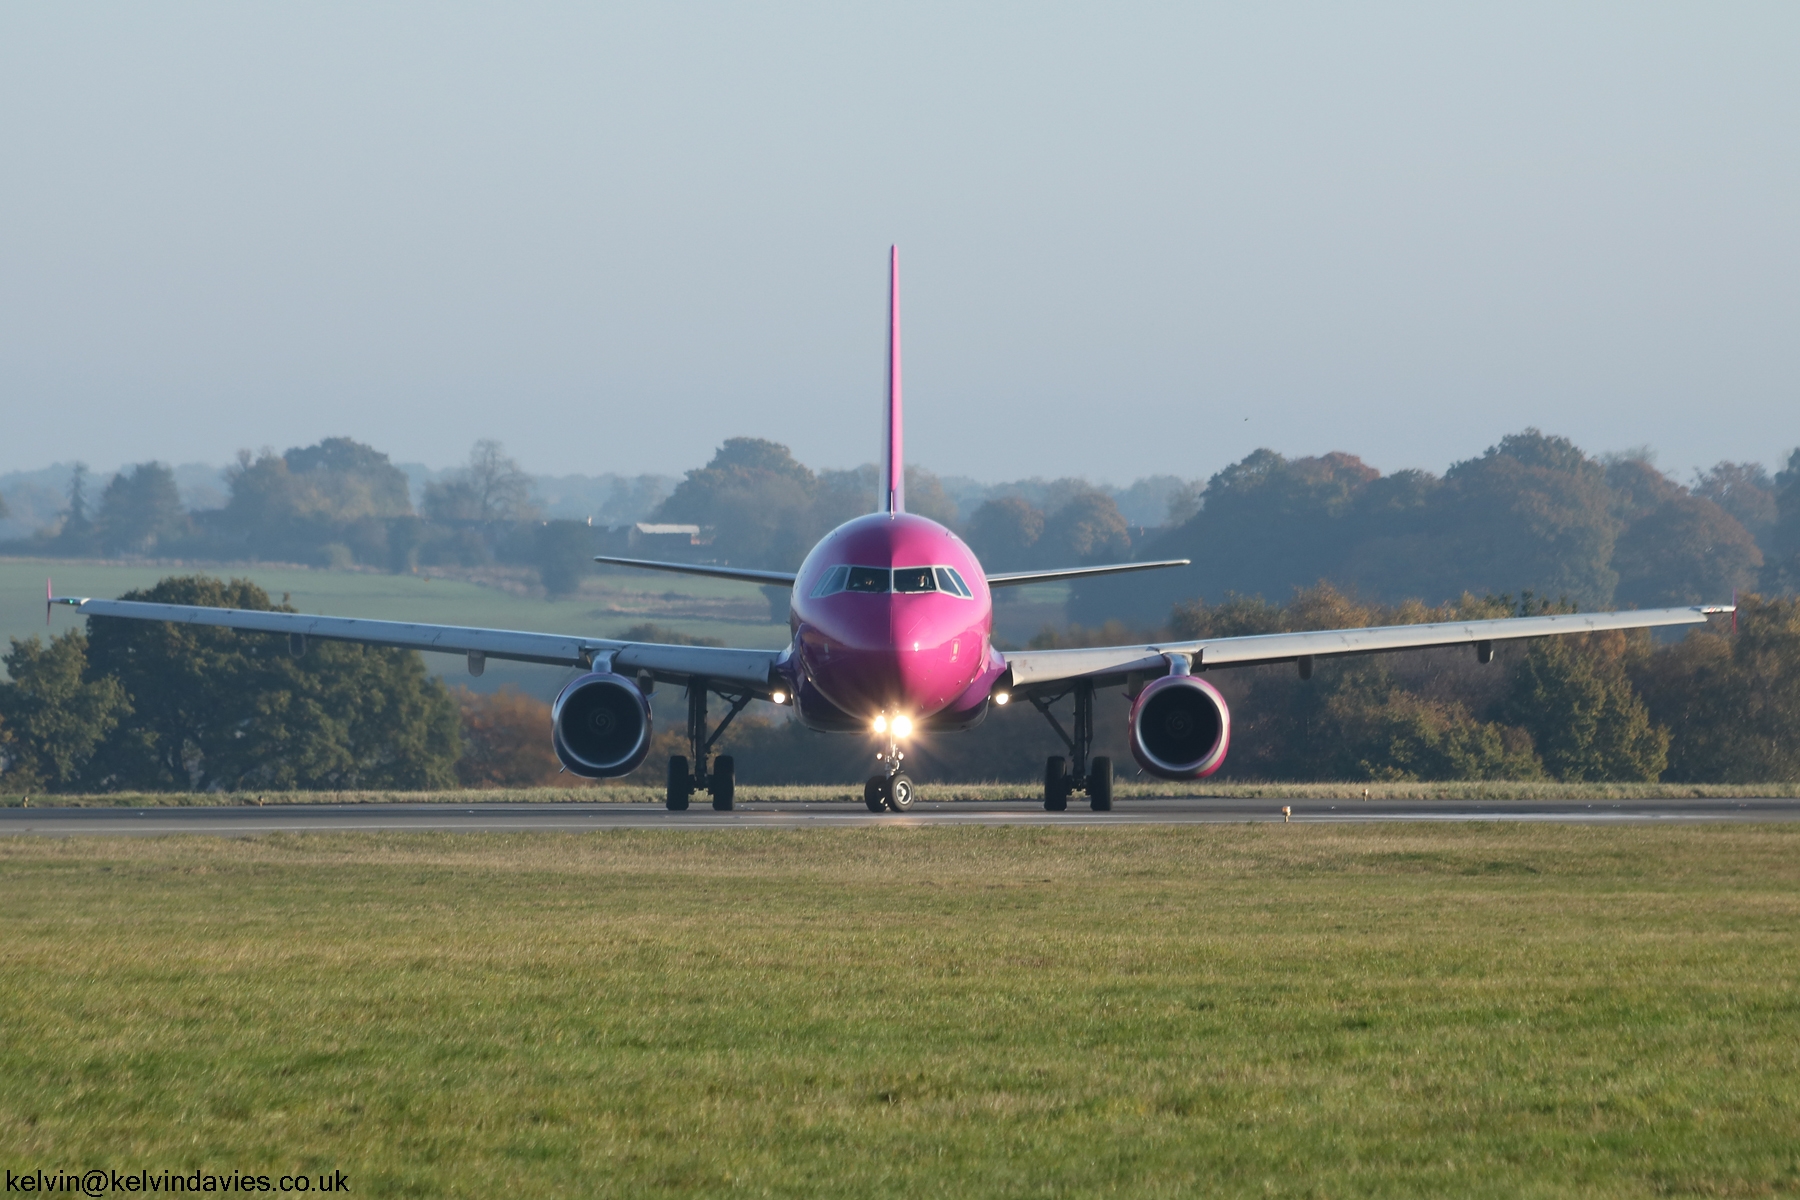 Wizz Air A320 HA-LPQ